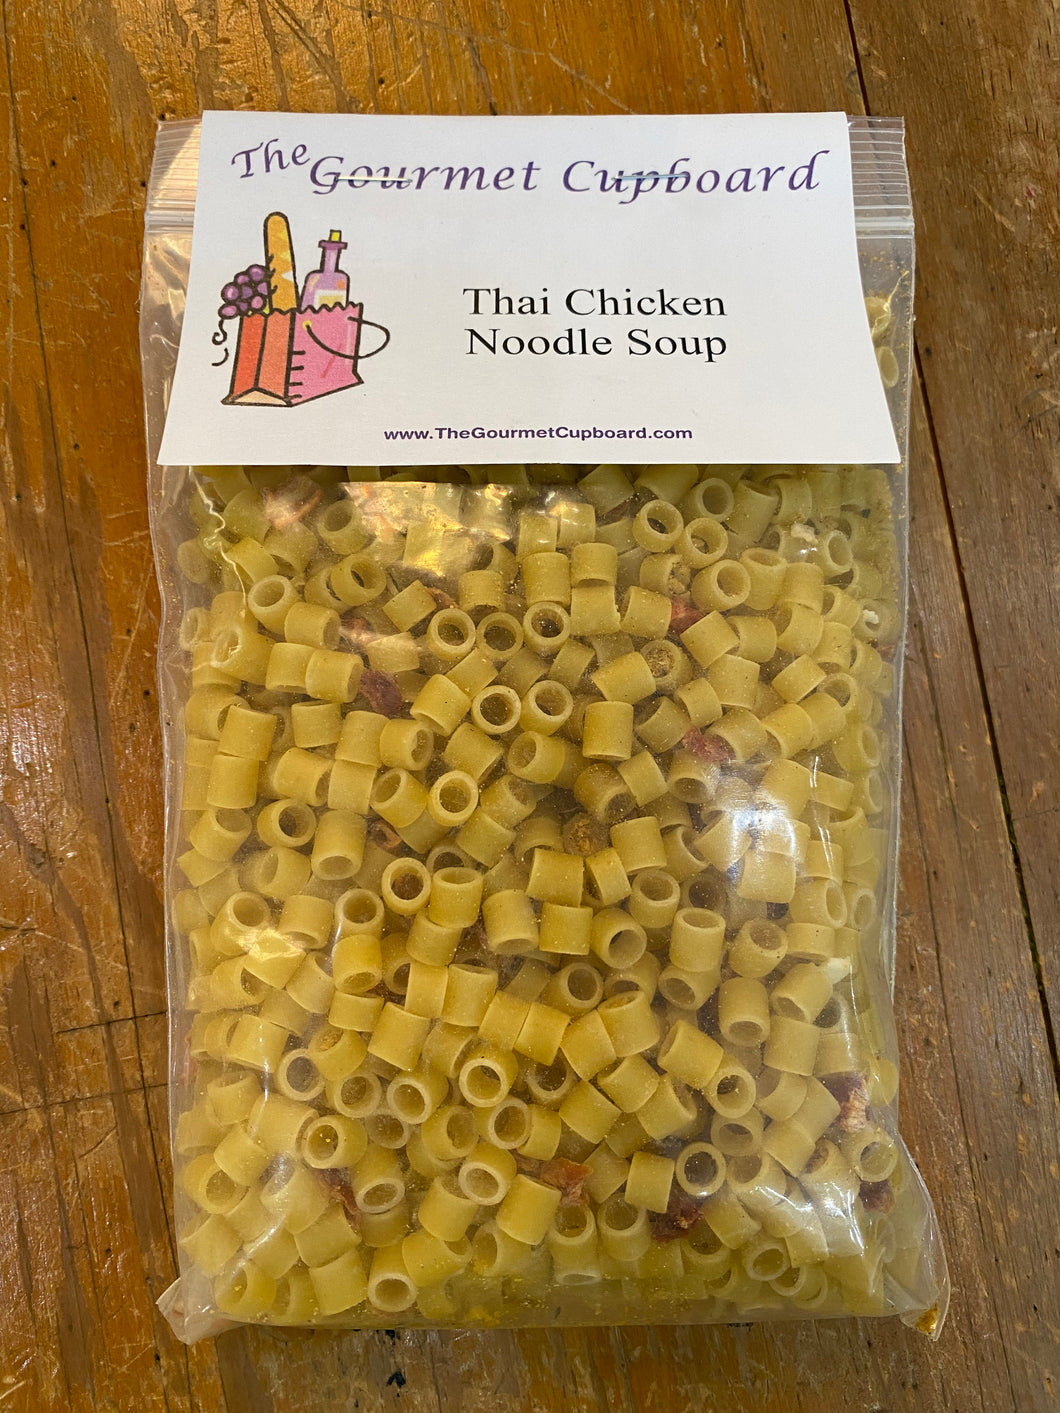 Thai Chicken Noodle Soup Mix